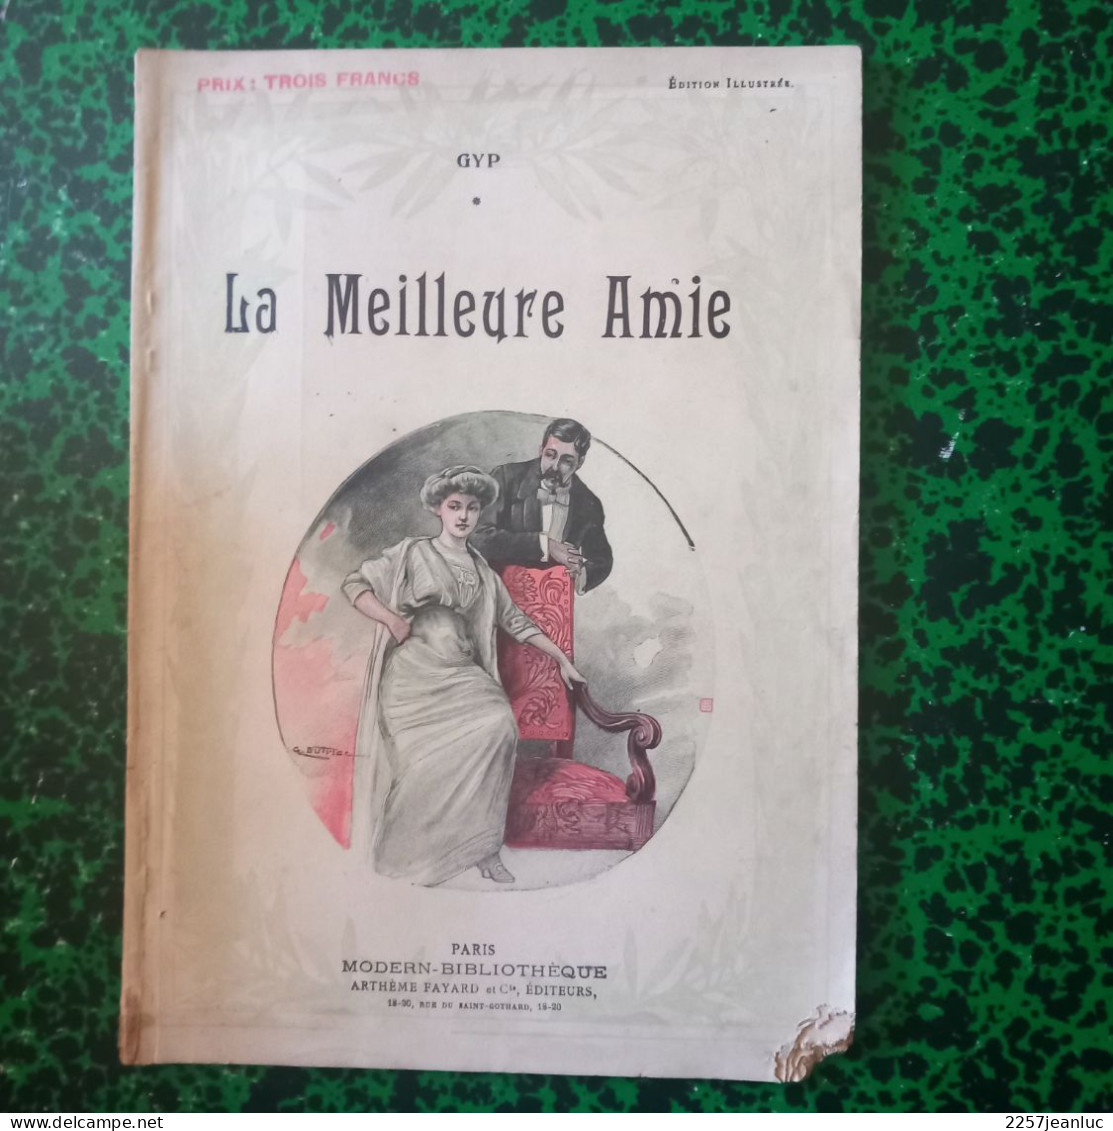 Edition Illustrée Gyp De 1913 * La Meilleure Amie - Romantique